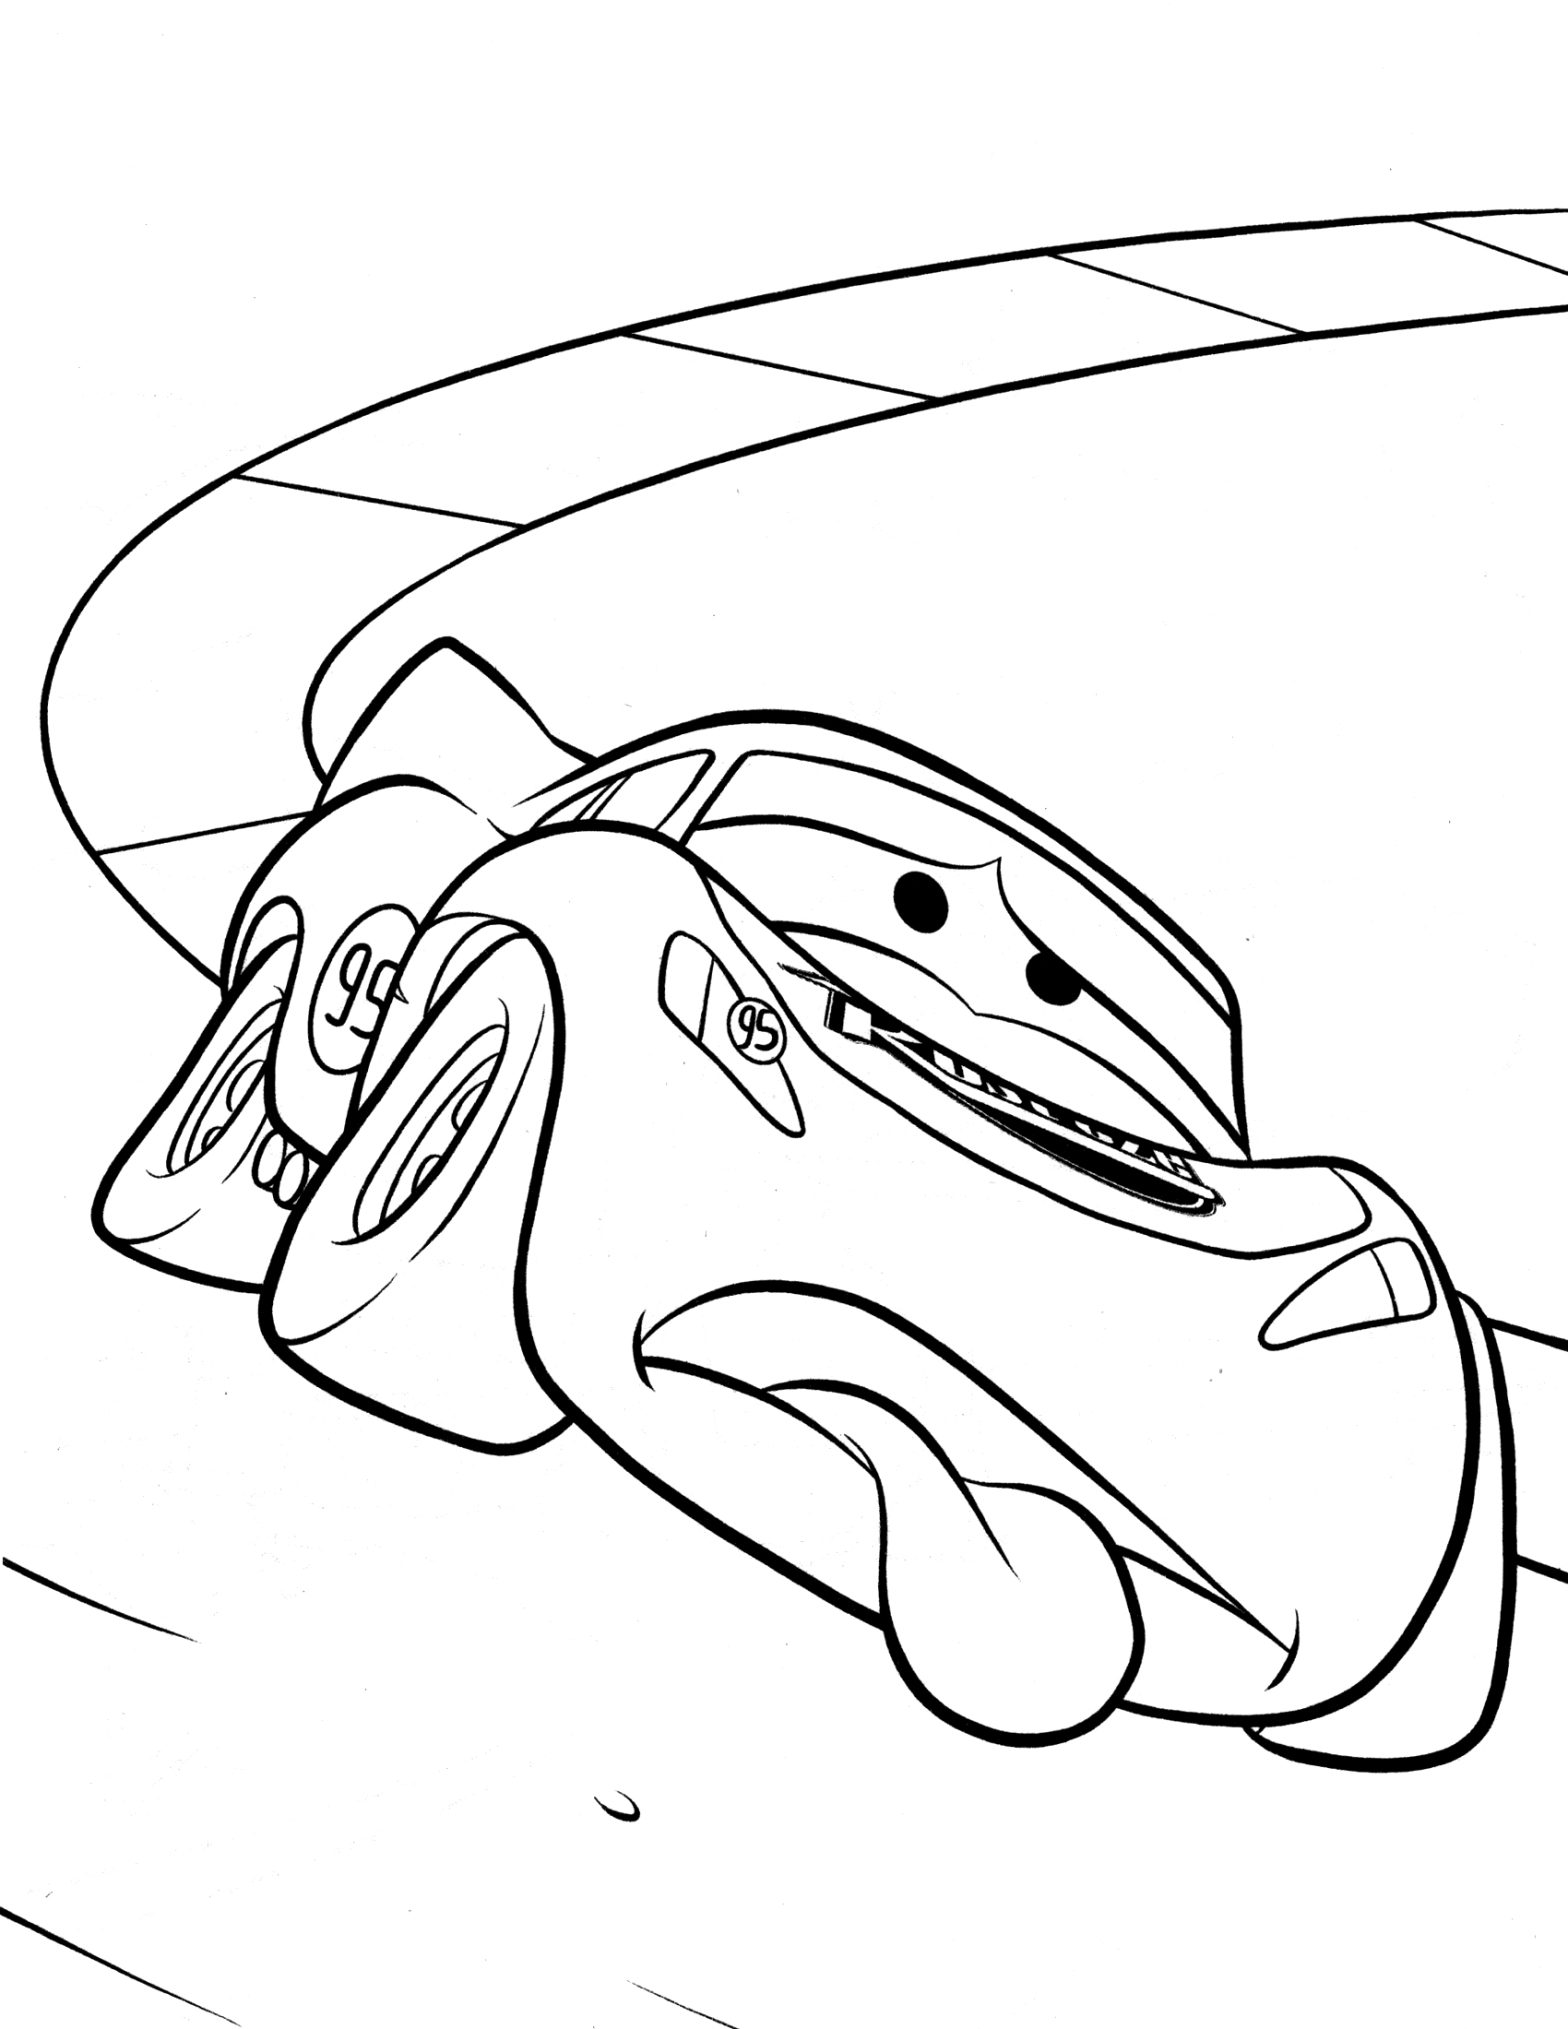 Раскраска машины из мультфильма Тачки для мальчиков бесплатно (мультфильм)